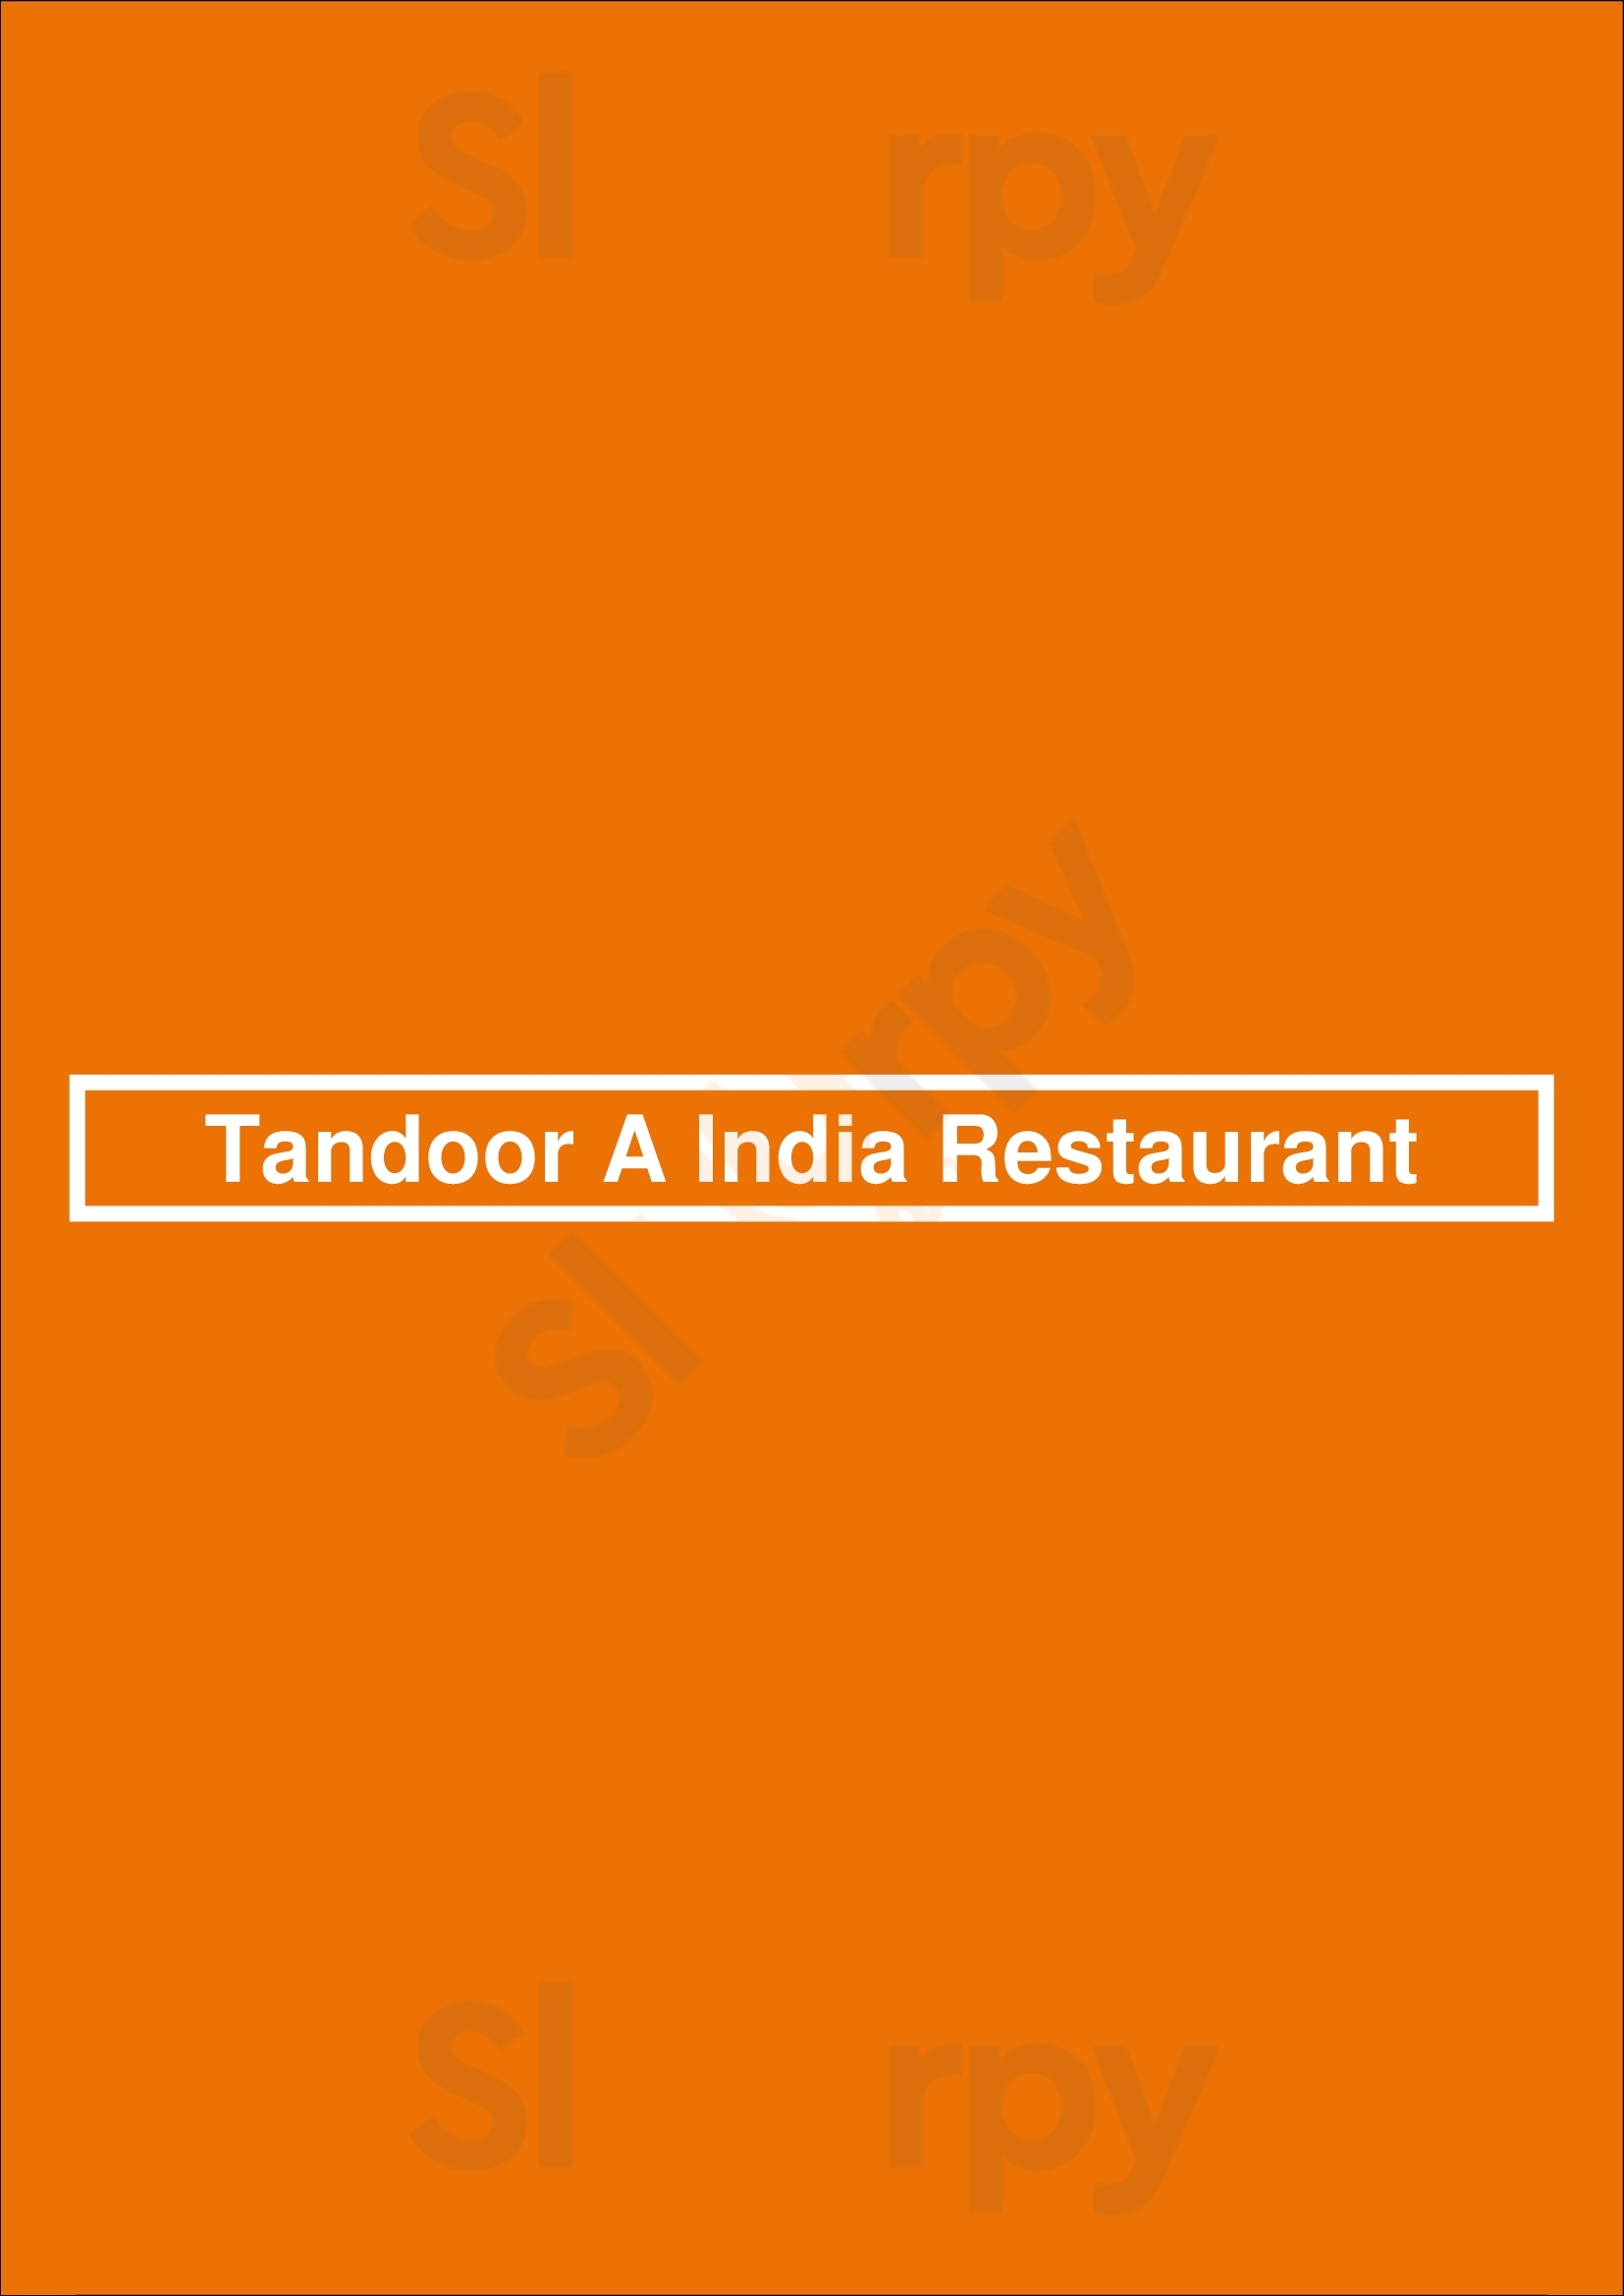 Tandoor A India Restaurant Los Angeles Menu - 1